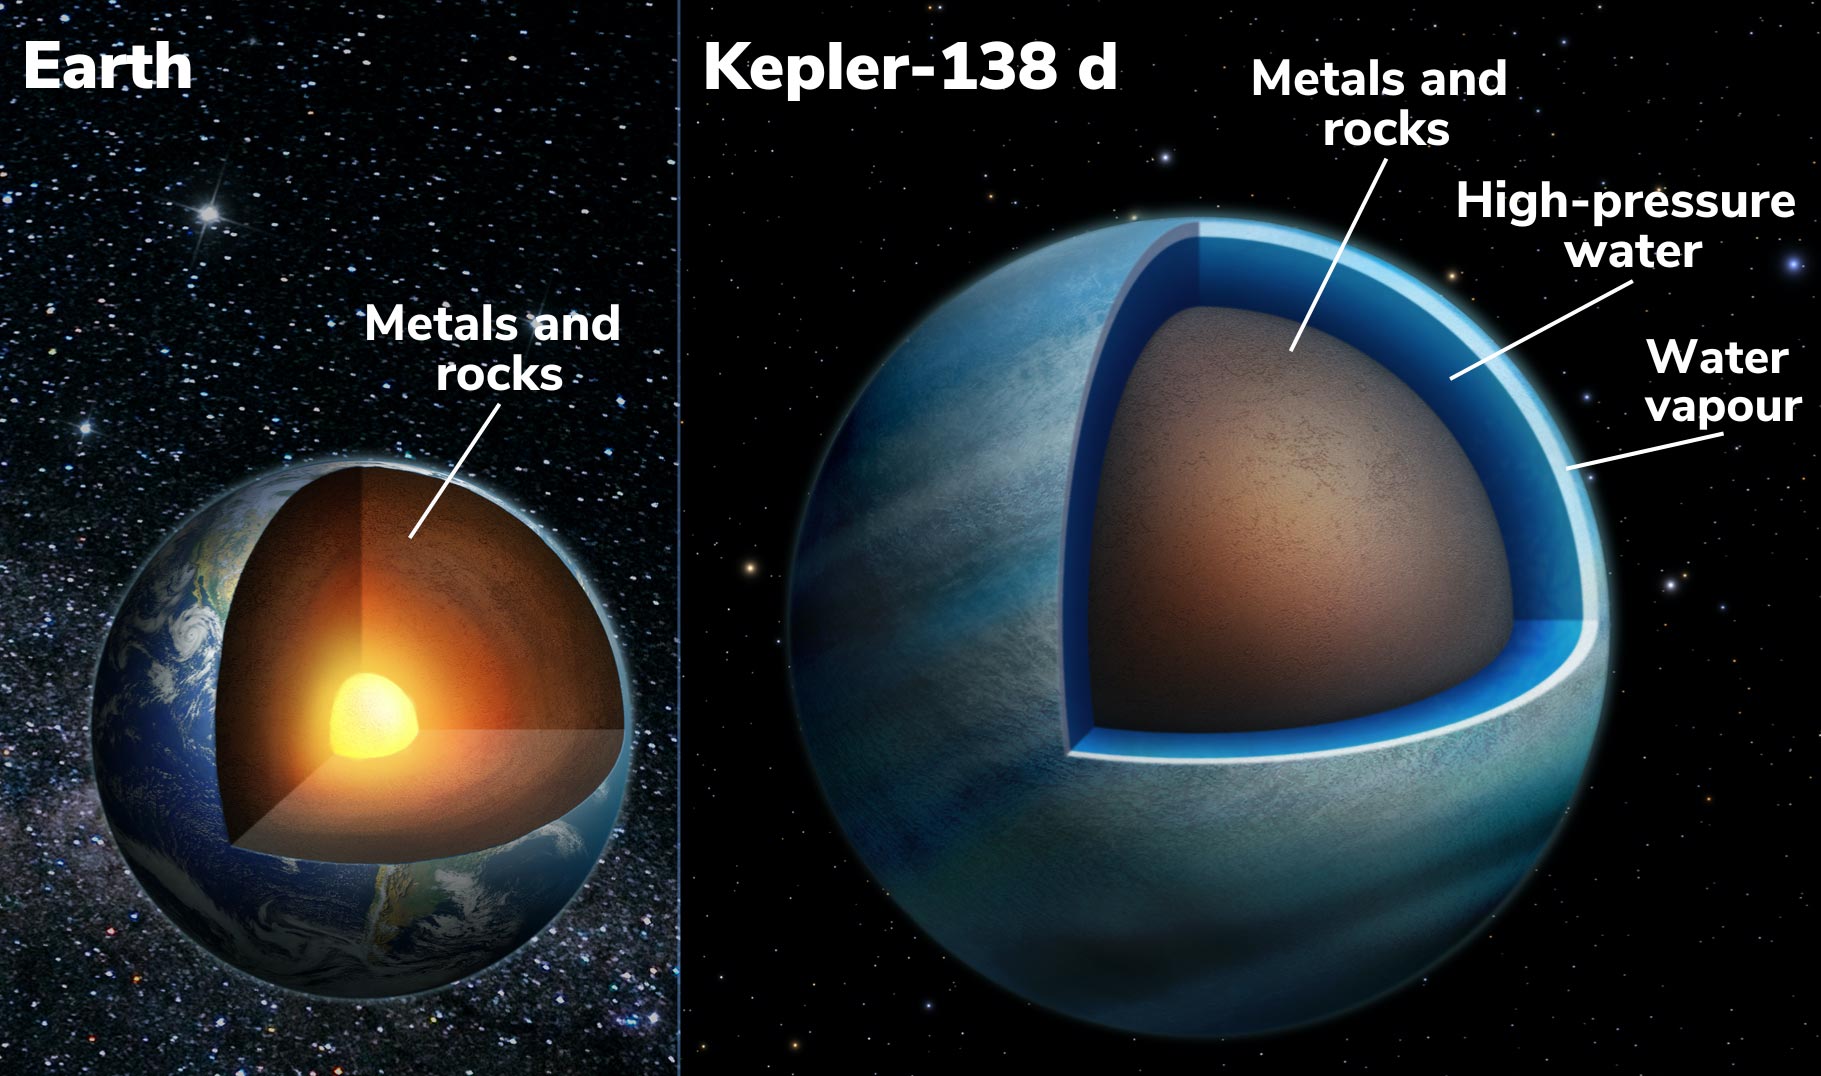 天文学家发现两颗系外行星与太阳系中的任何行星都不同